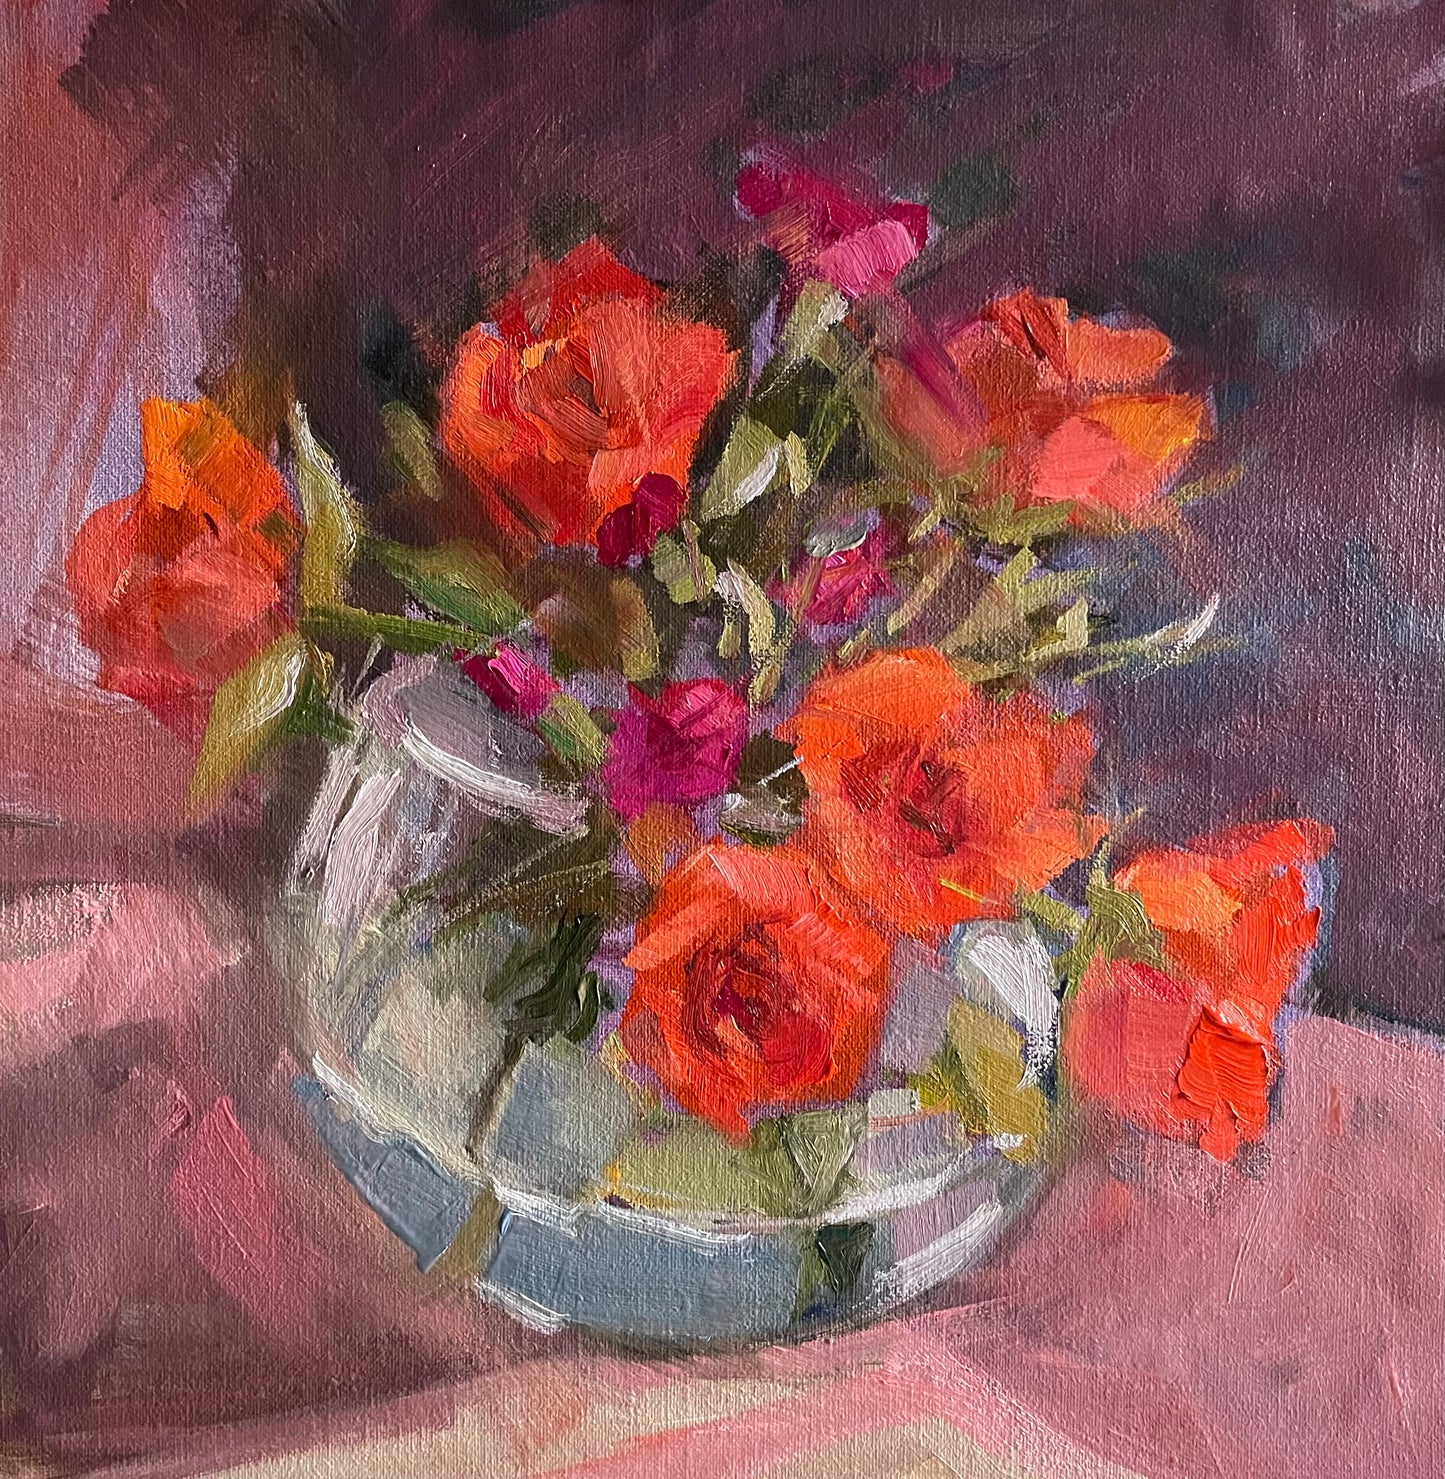 Orange roses in a glass vase